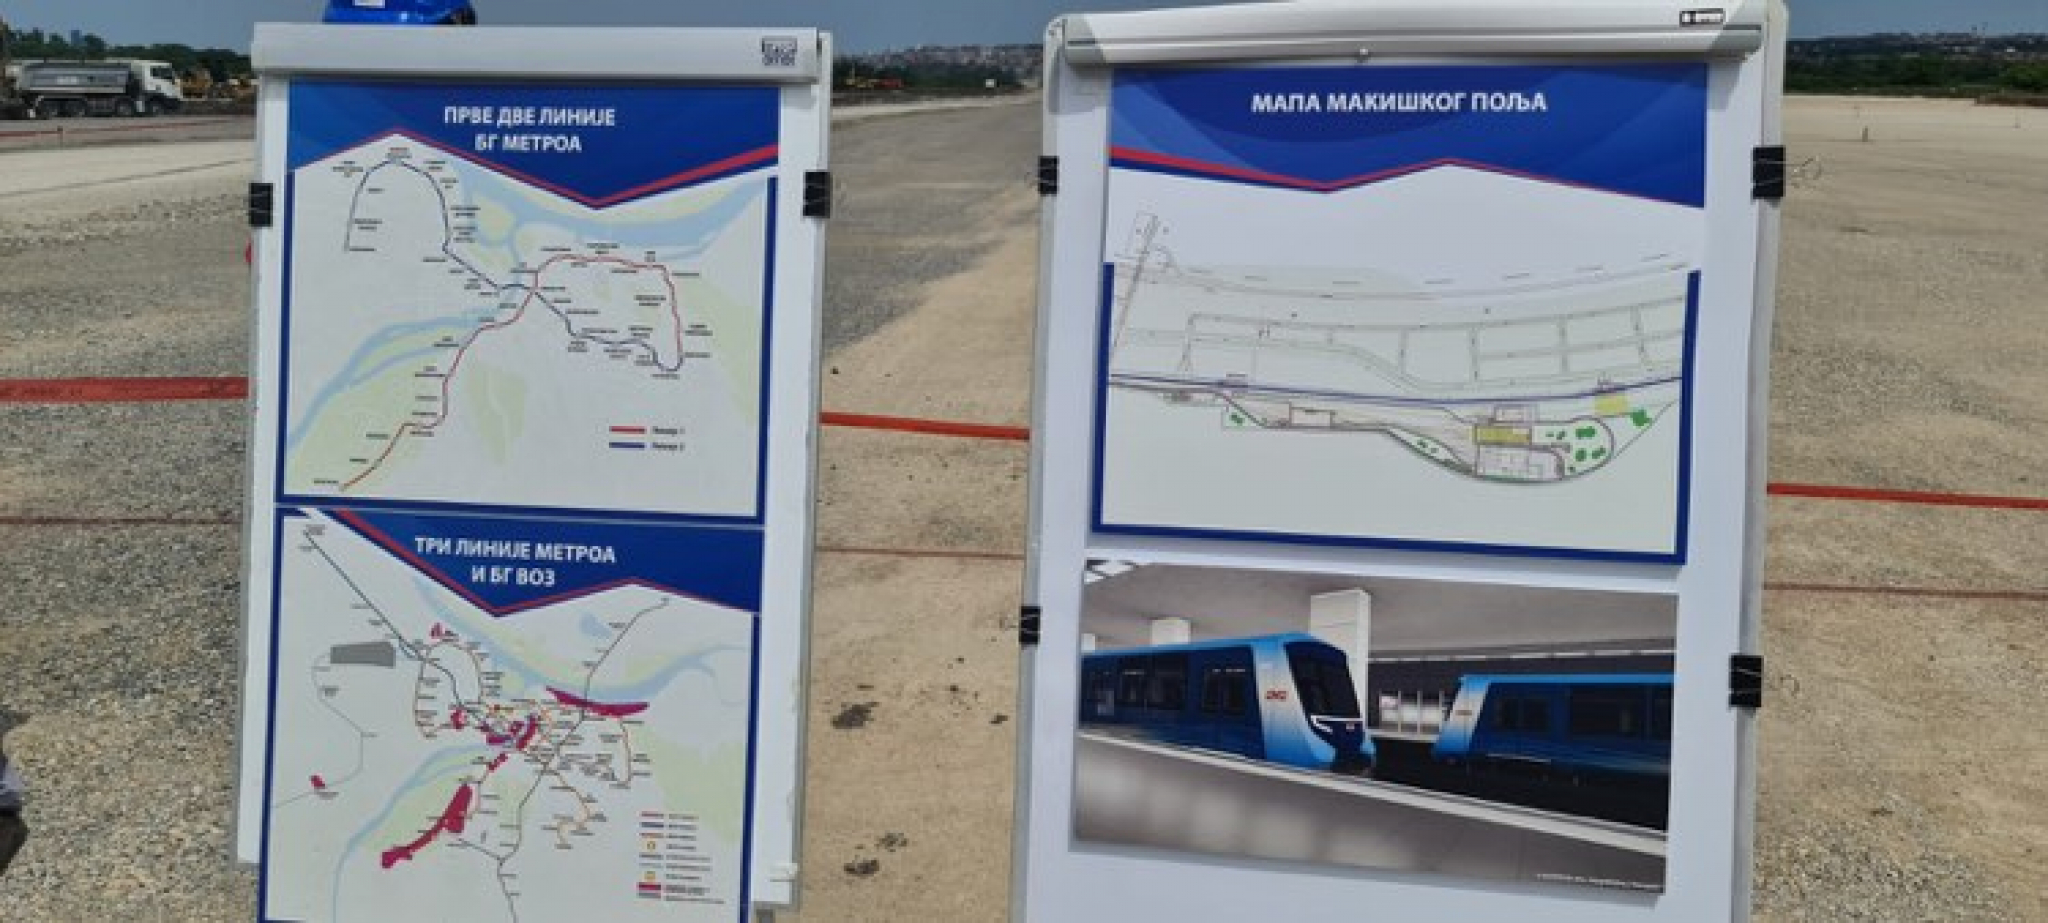 PREDSEDNIK VUČIĆ NA MAKIŠKOM POLJU Beograd će 2028. godine dobiti metro, radovi odlično napreduju (VIDEO)